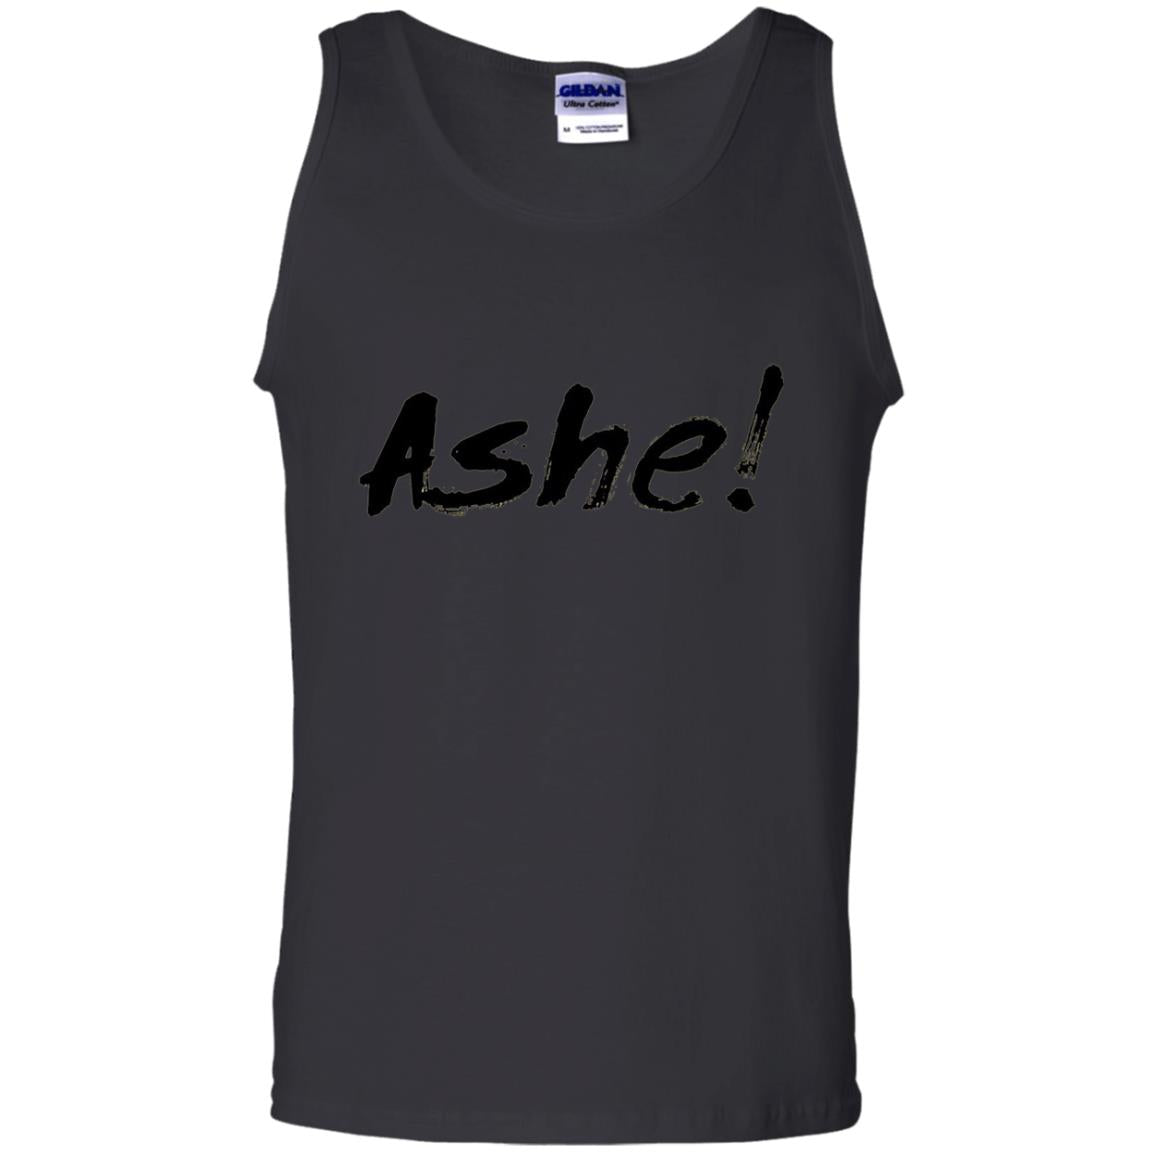 Yoruba Orisha Ashe T-shirt